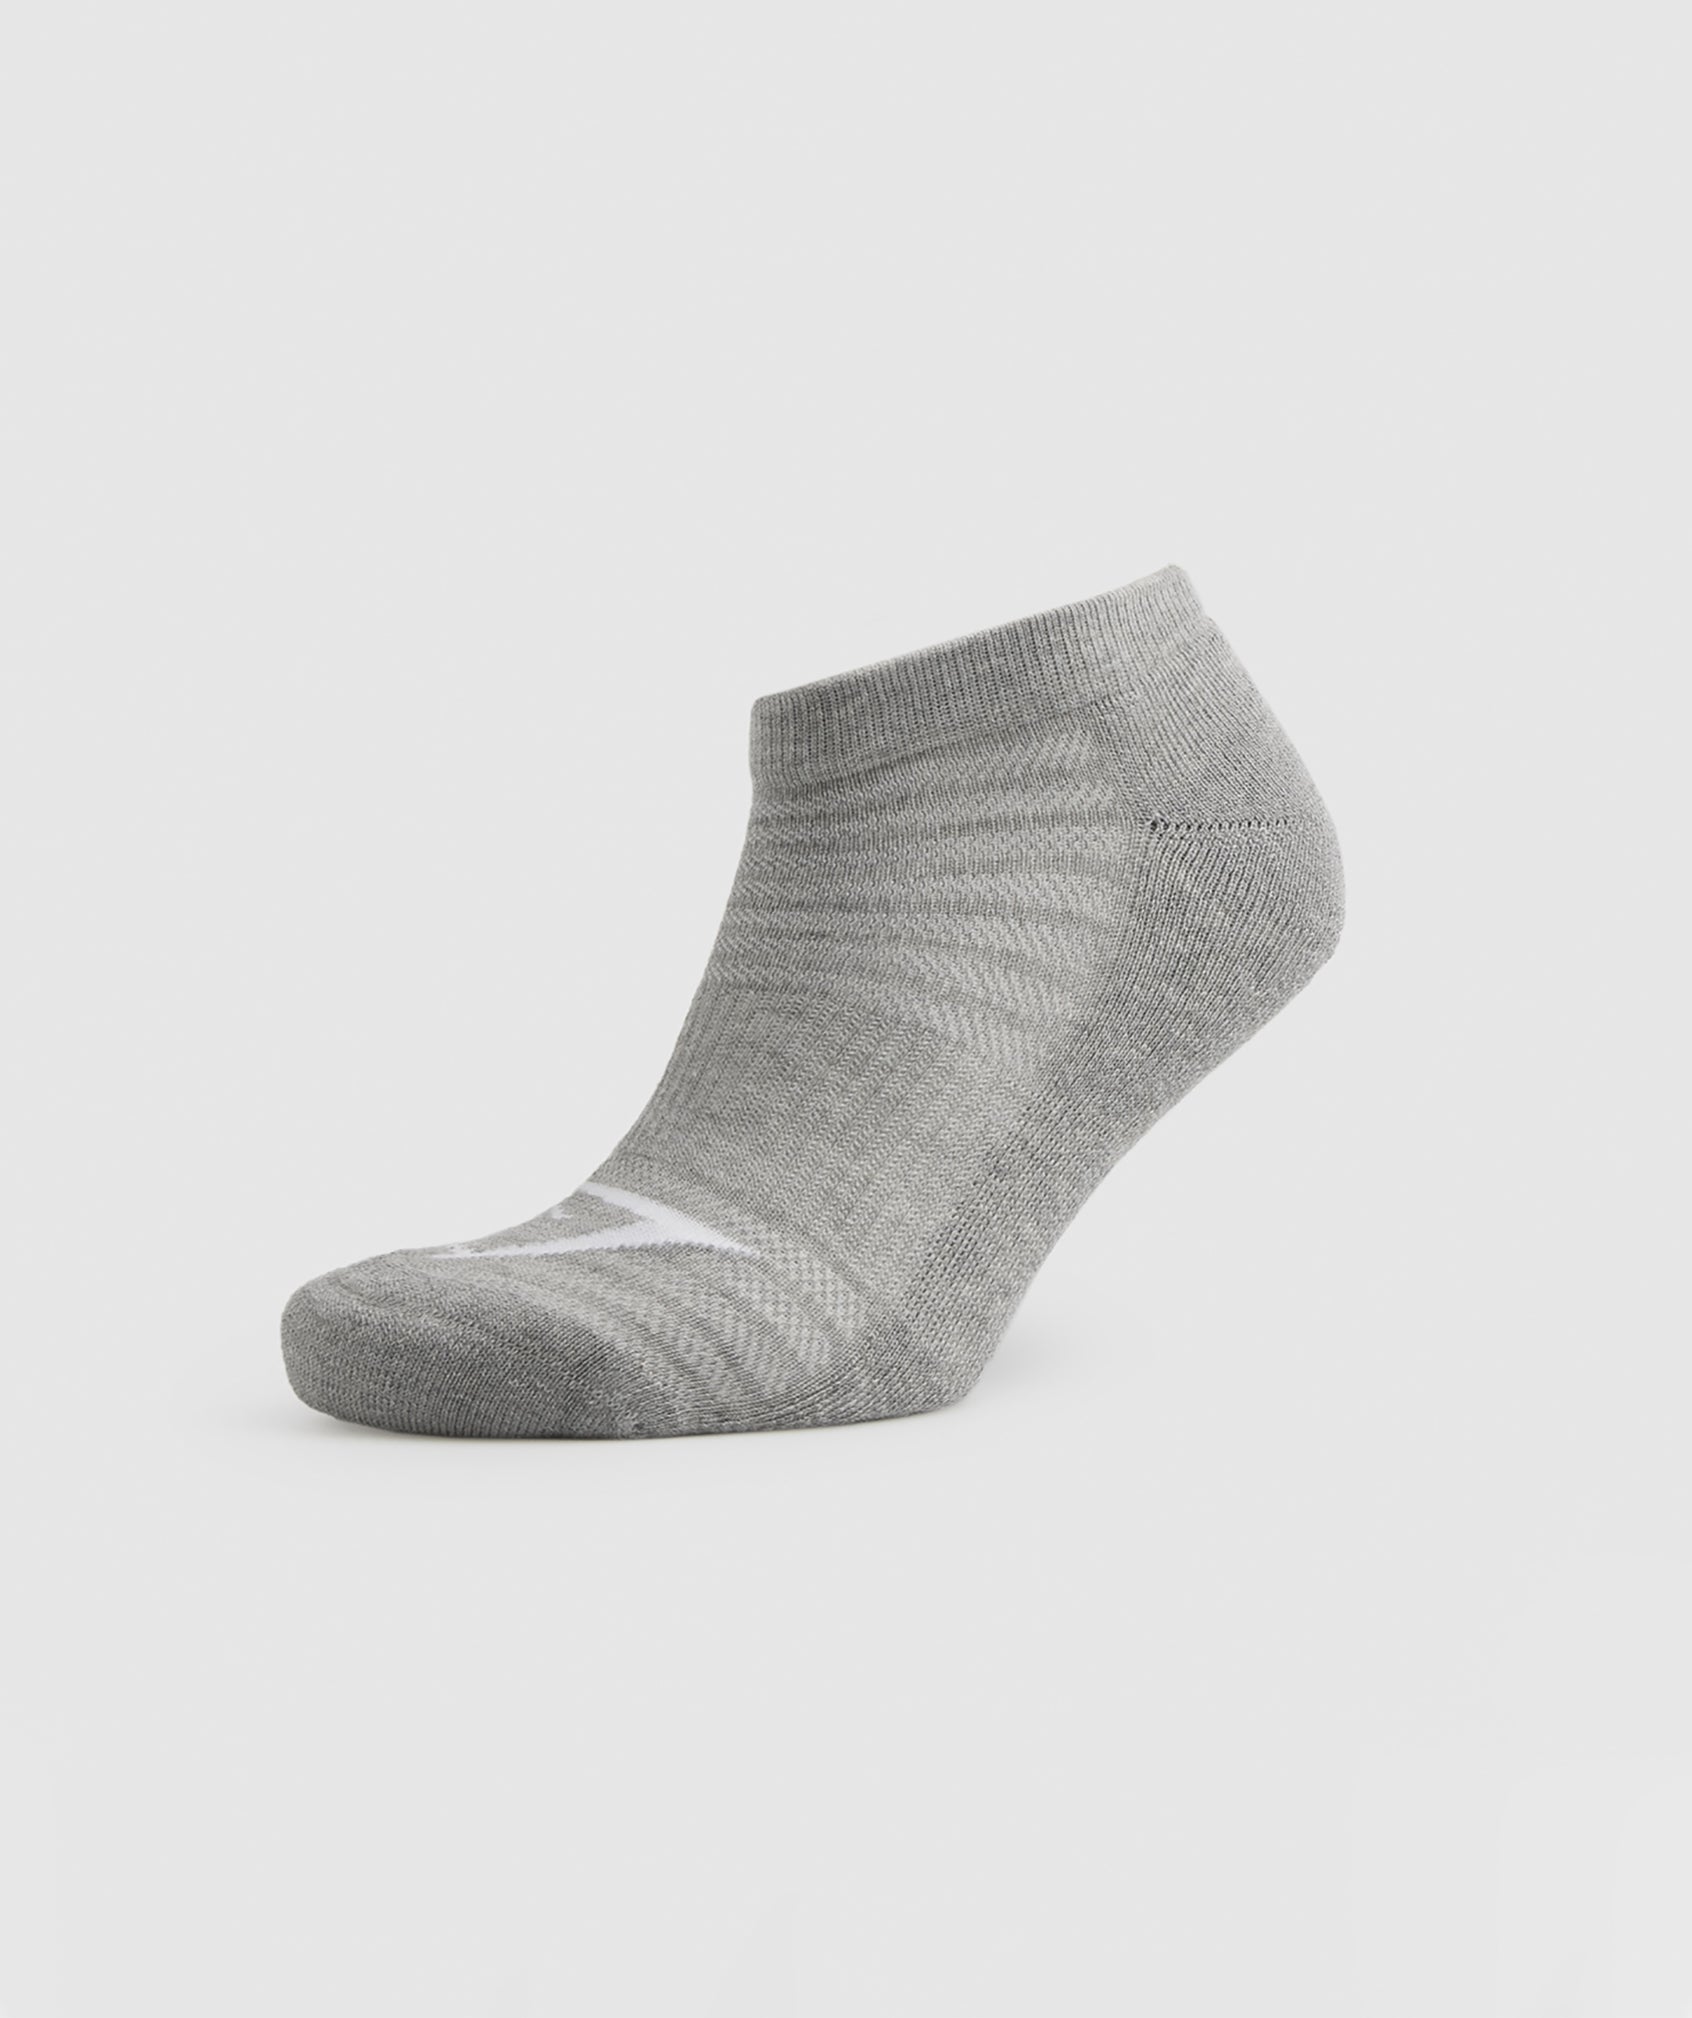 Trainer Socks 3pk in White/Black/Light Grey Core Marl